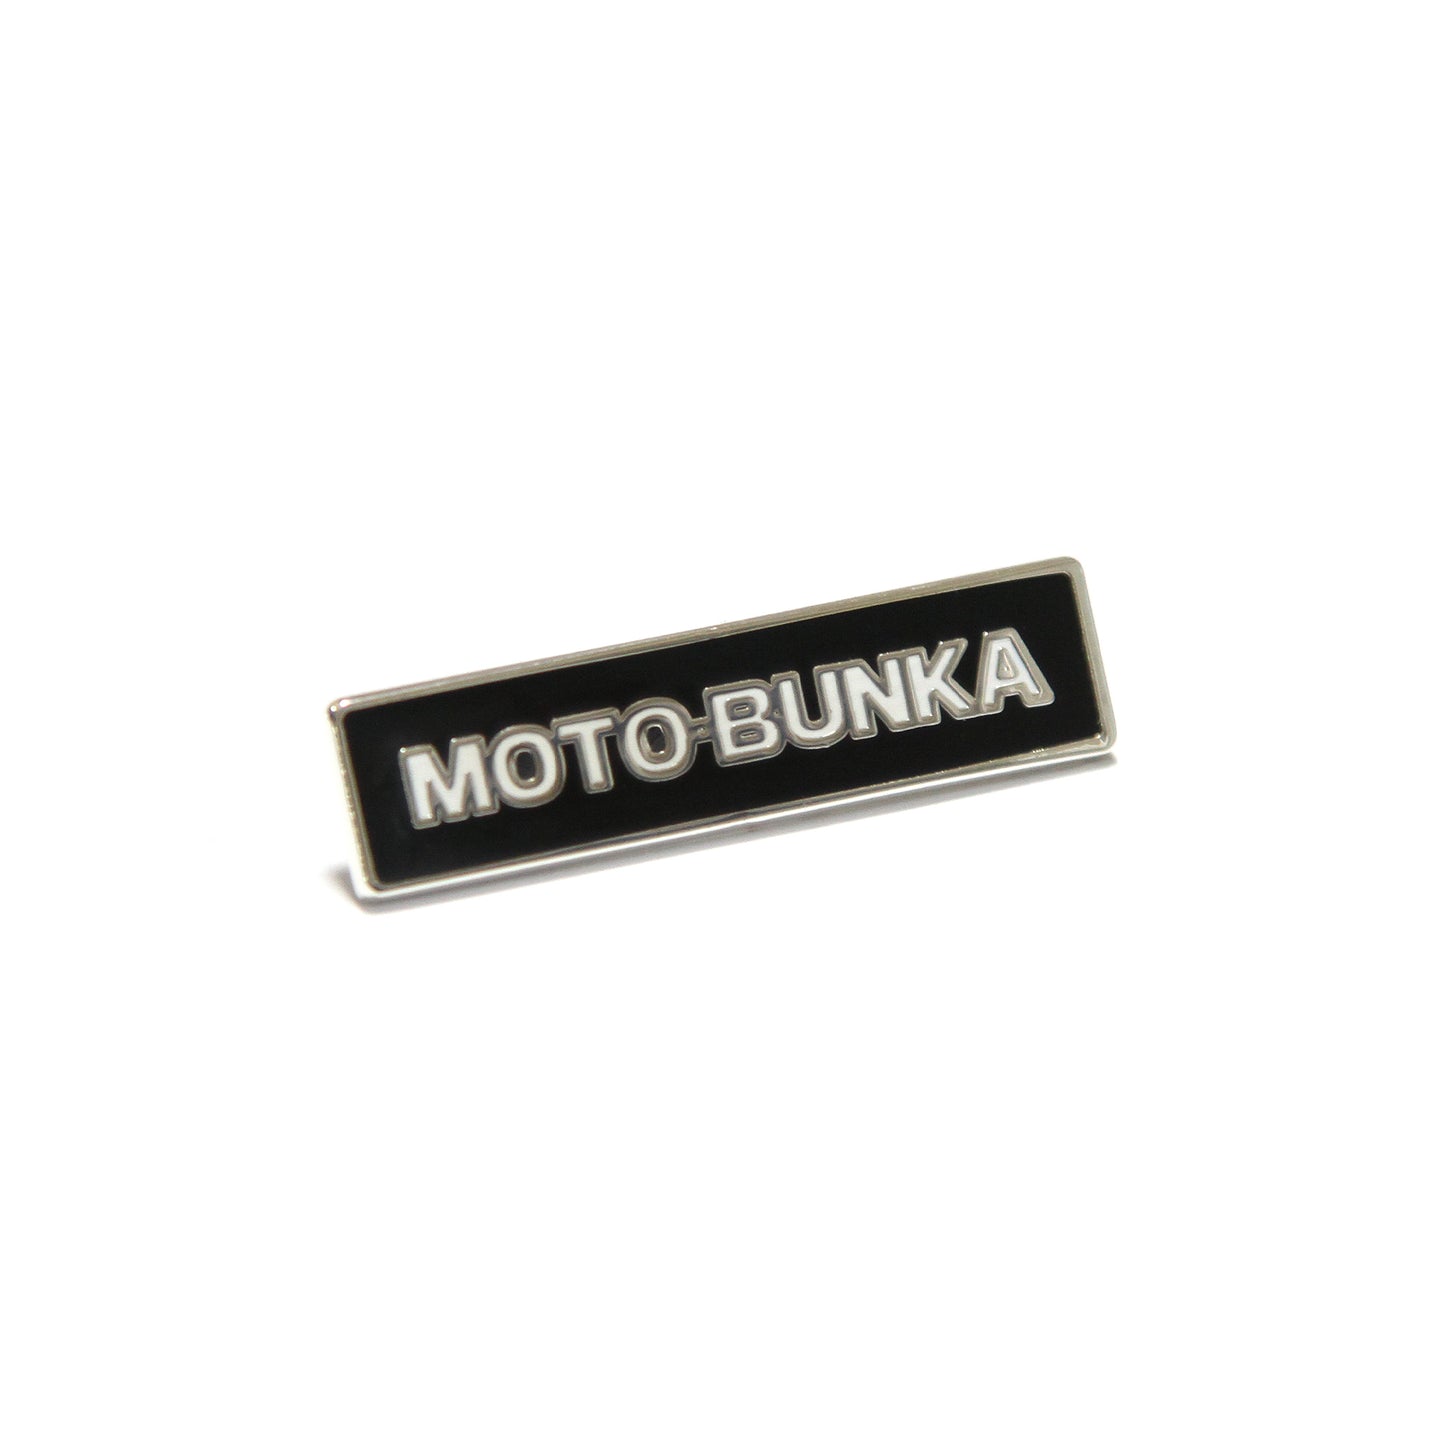 MOTO-BUNKA - Text Logo Pin Badge